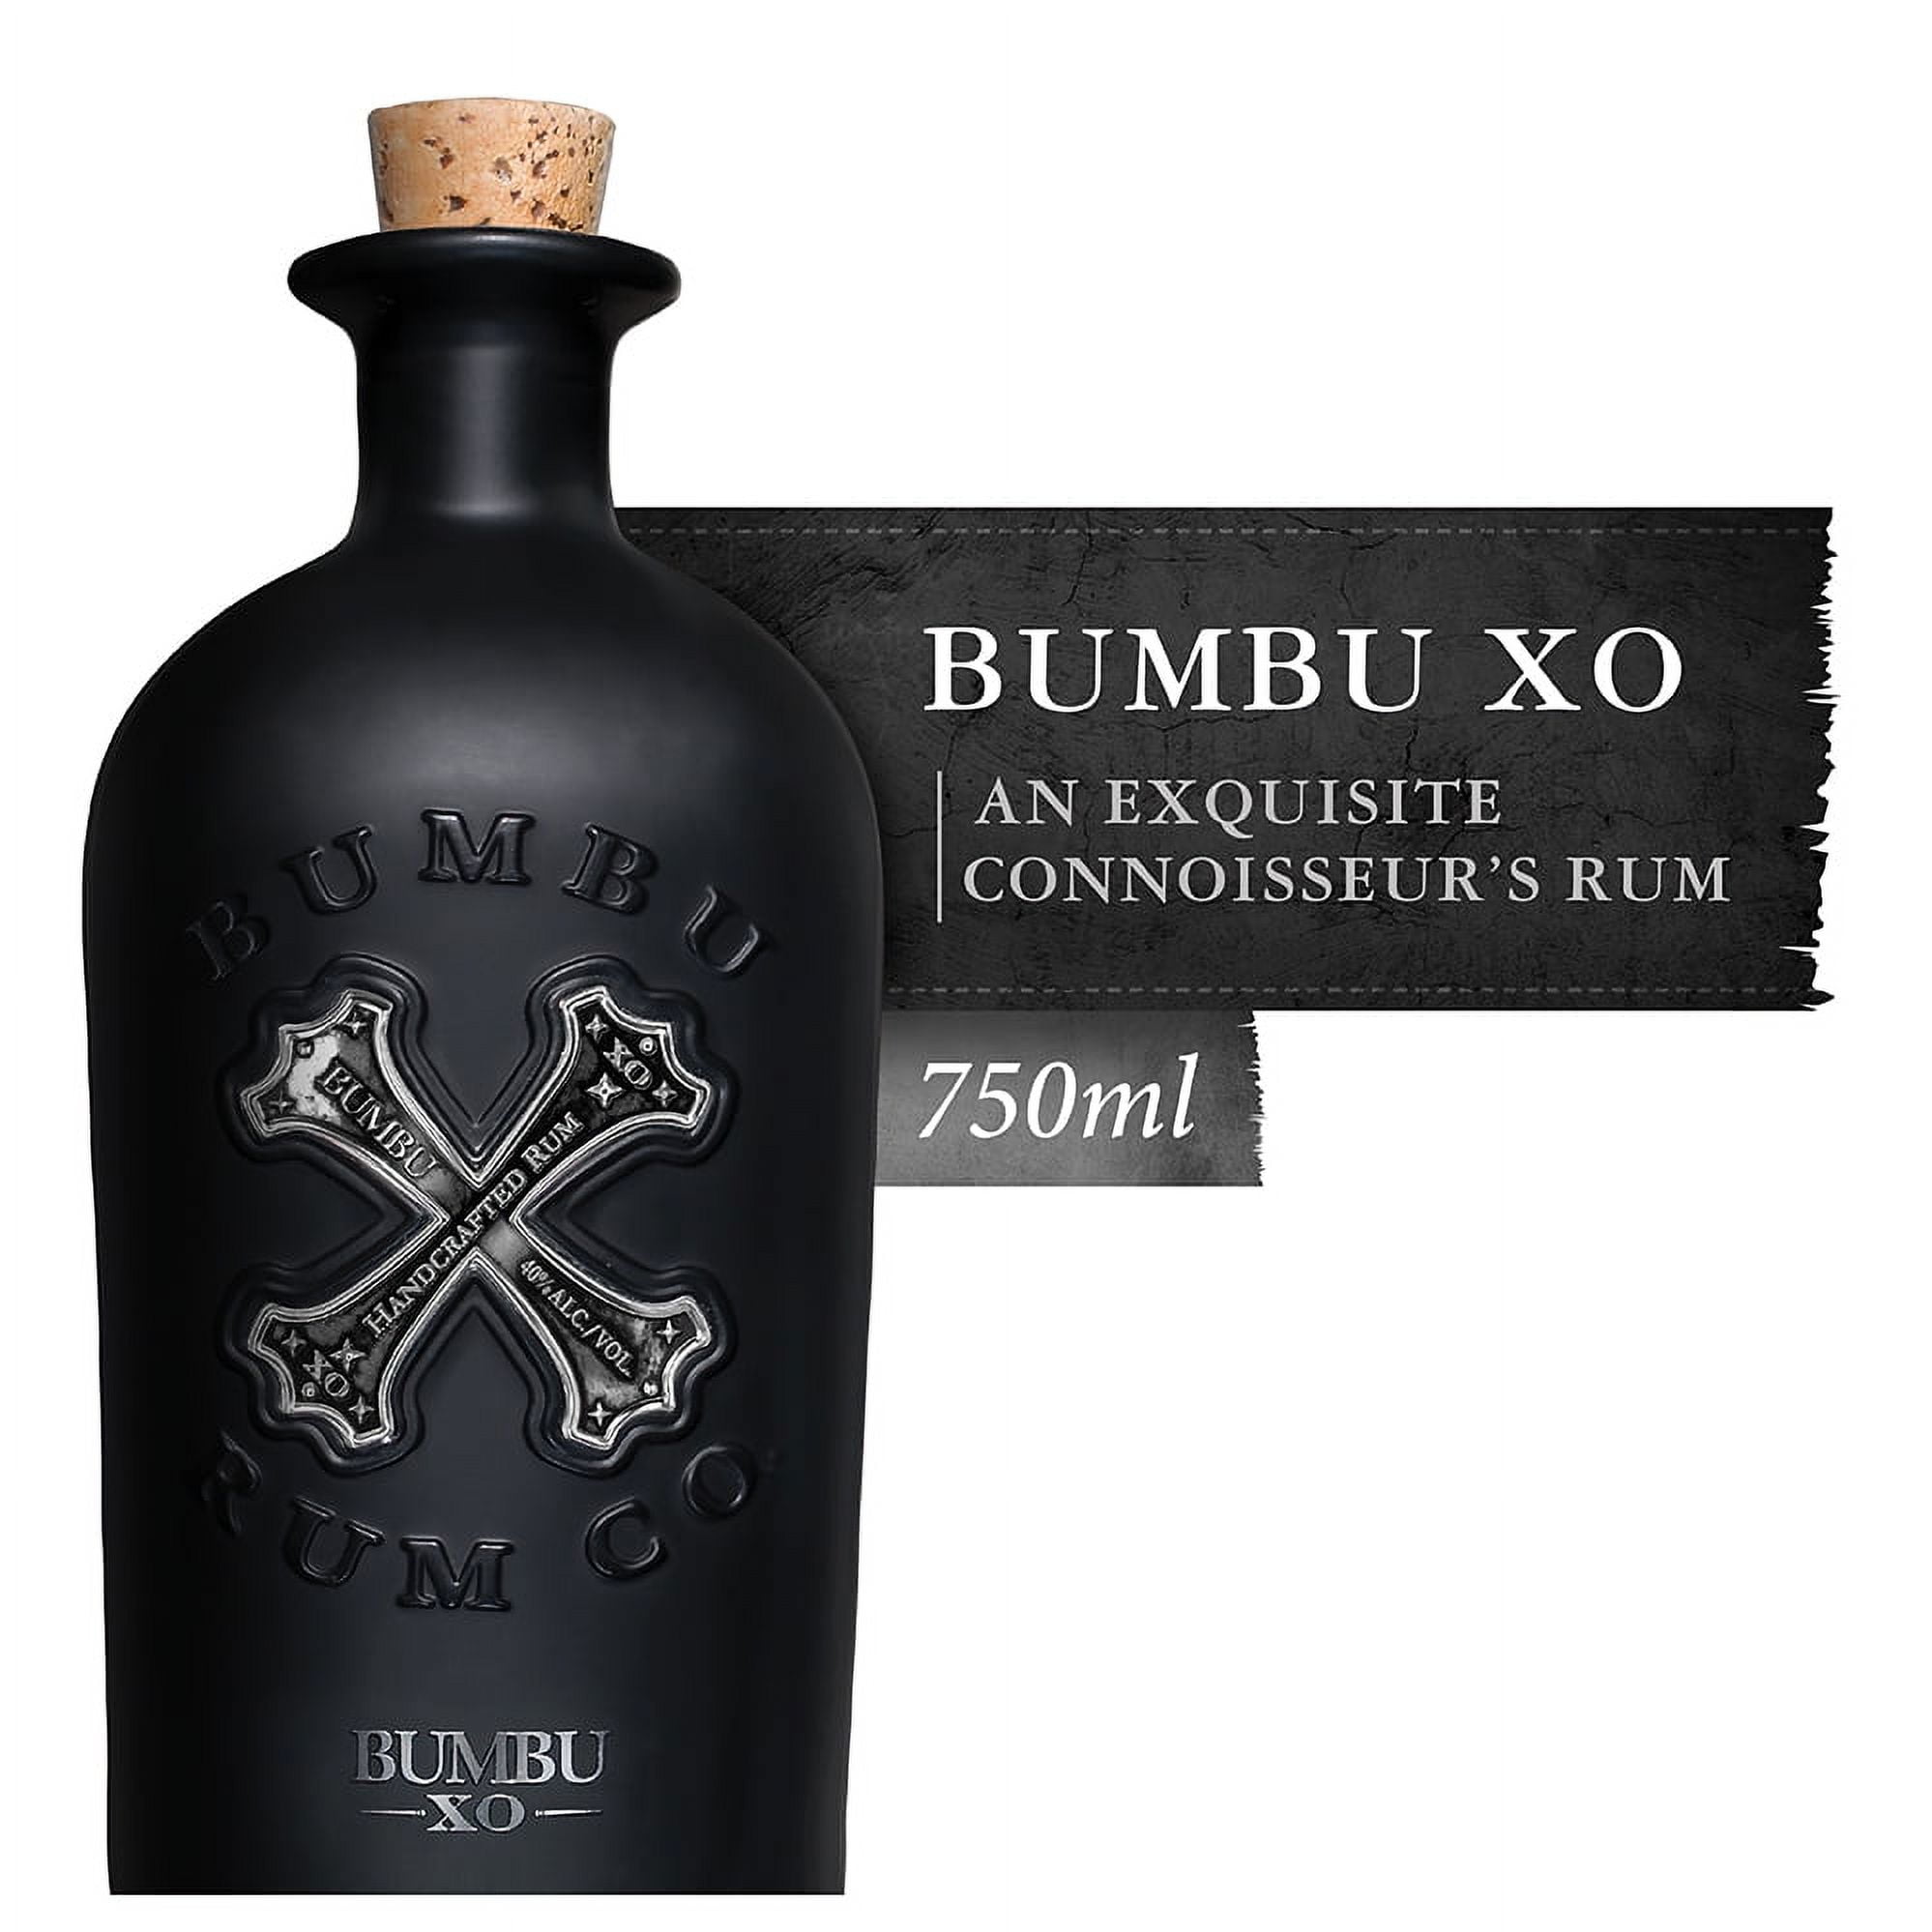 Bumbu XO Rum: Rated 7.0/10, Taste & Buy - RX449